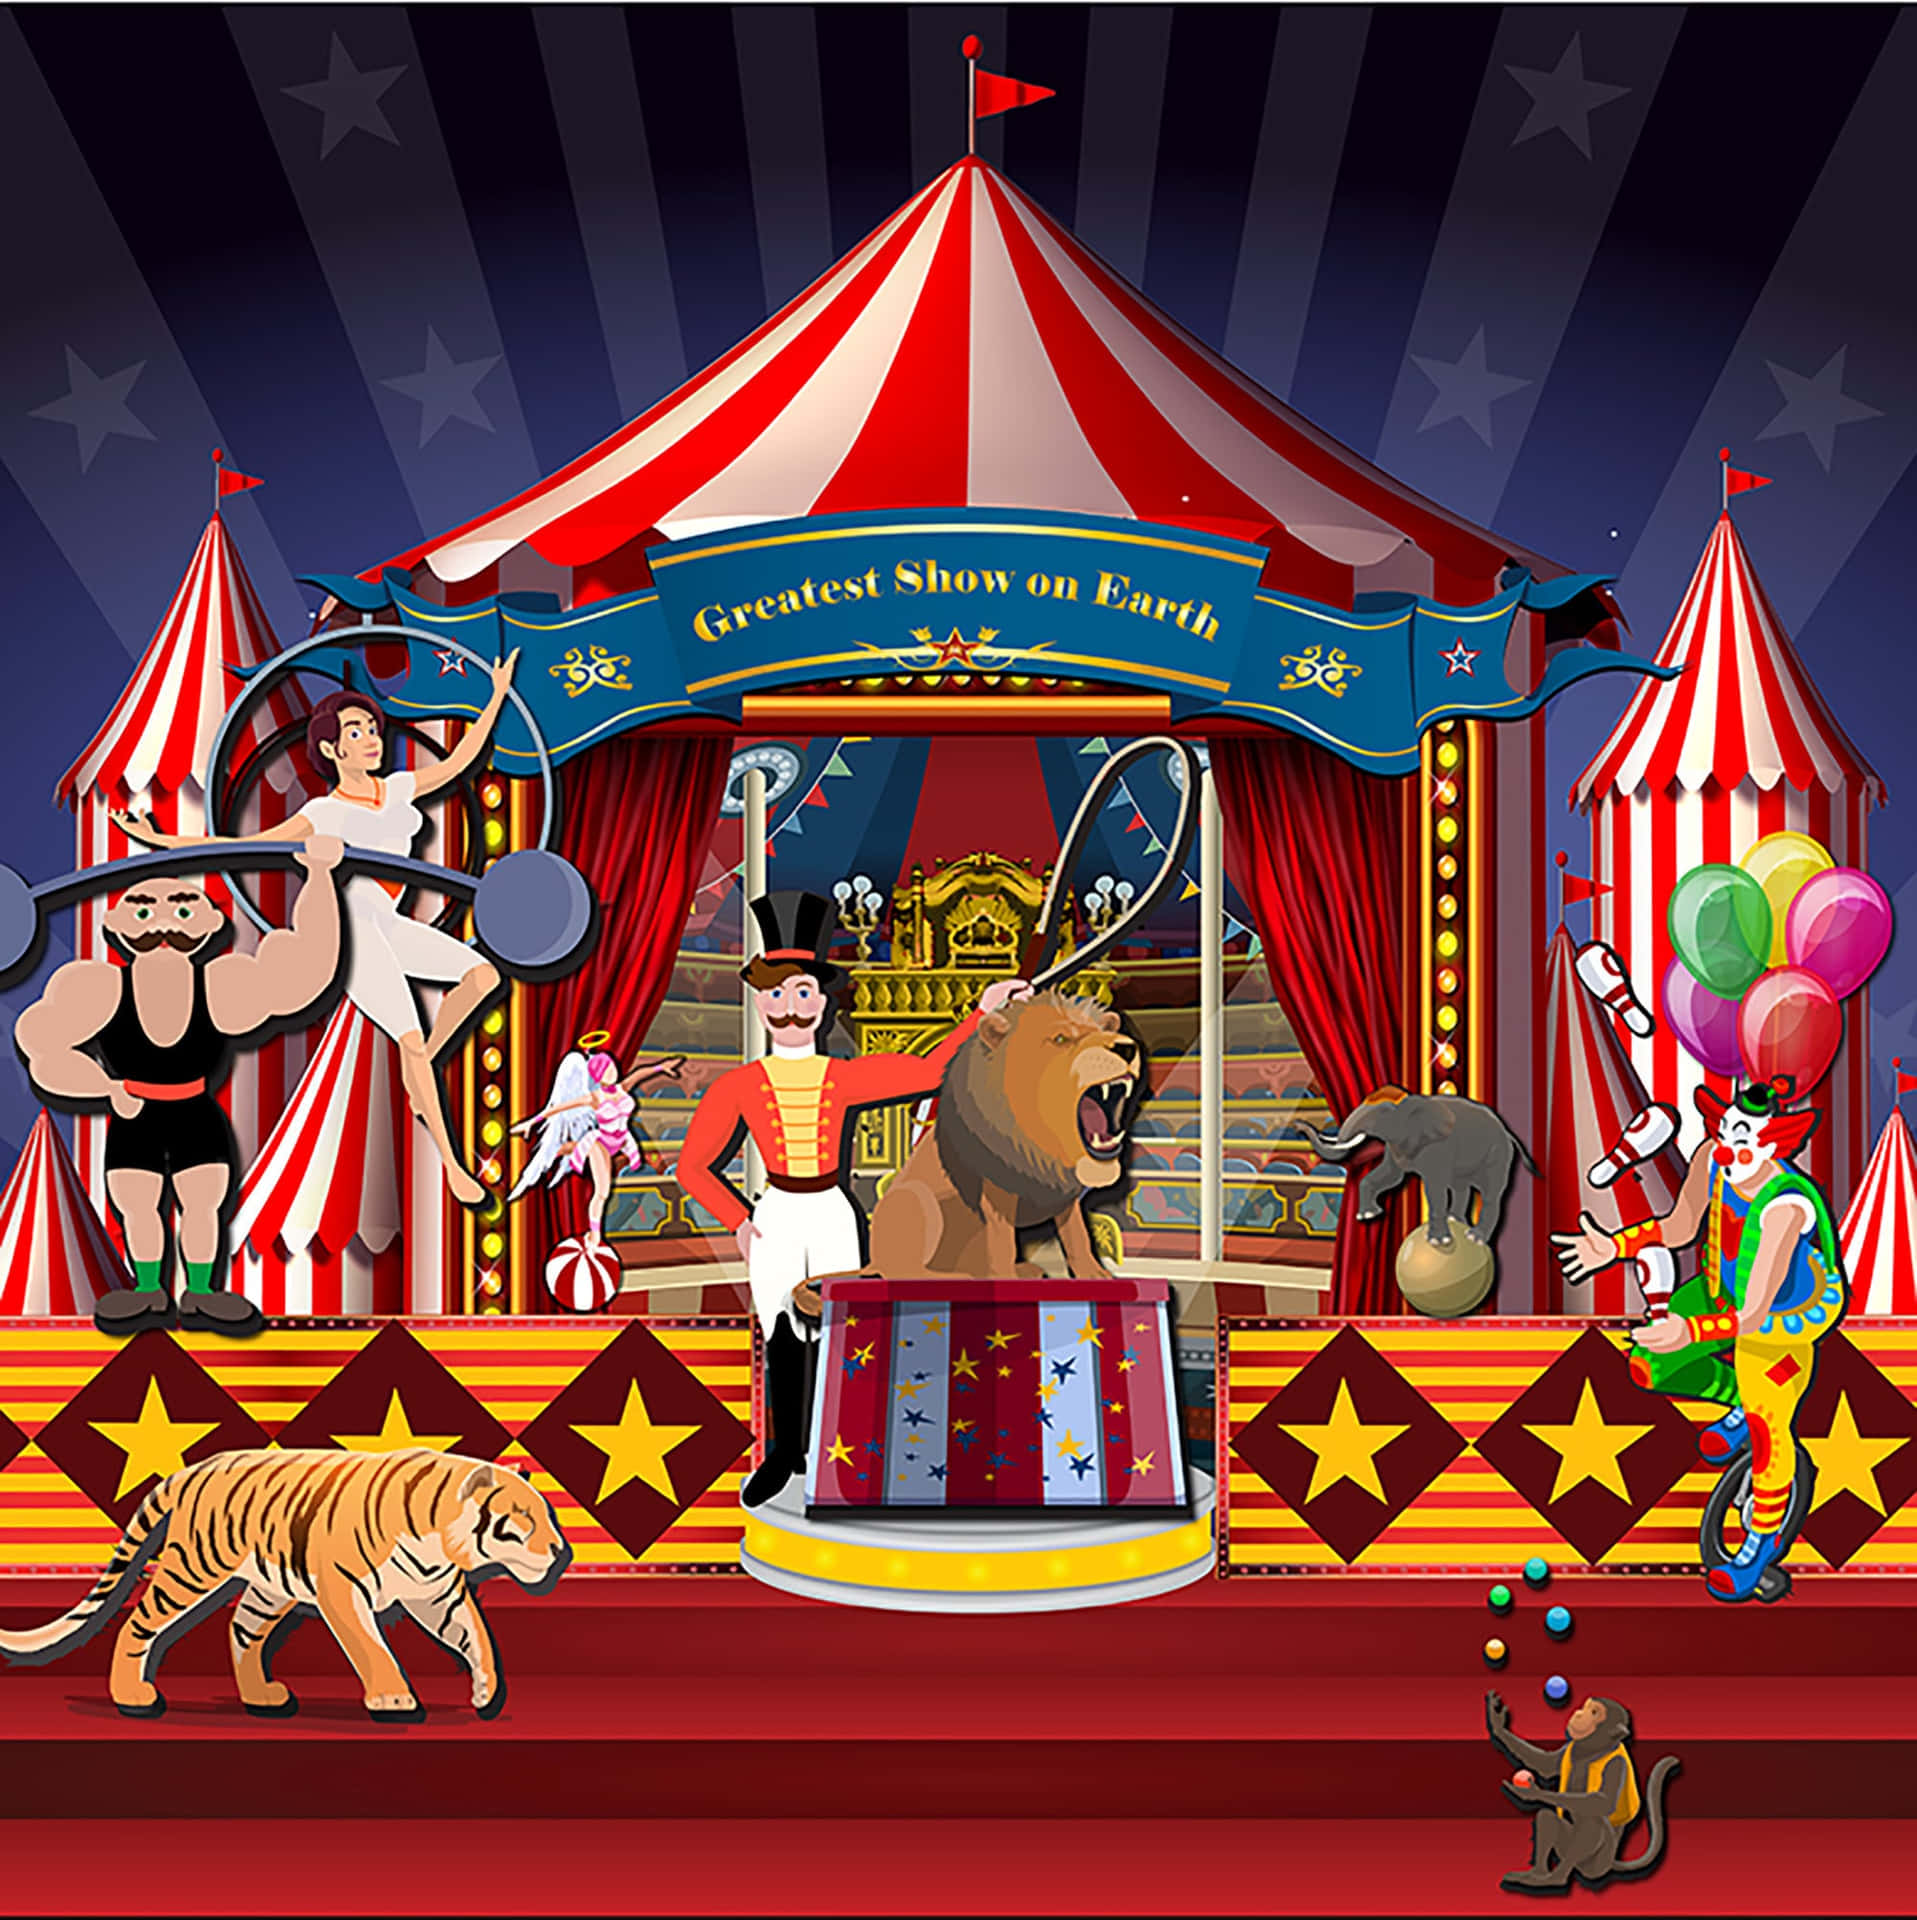 [100+] Fondos de circo | Wallpapers.com